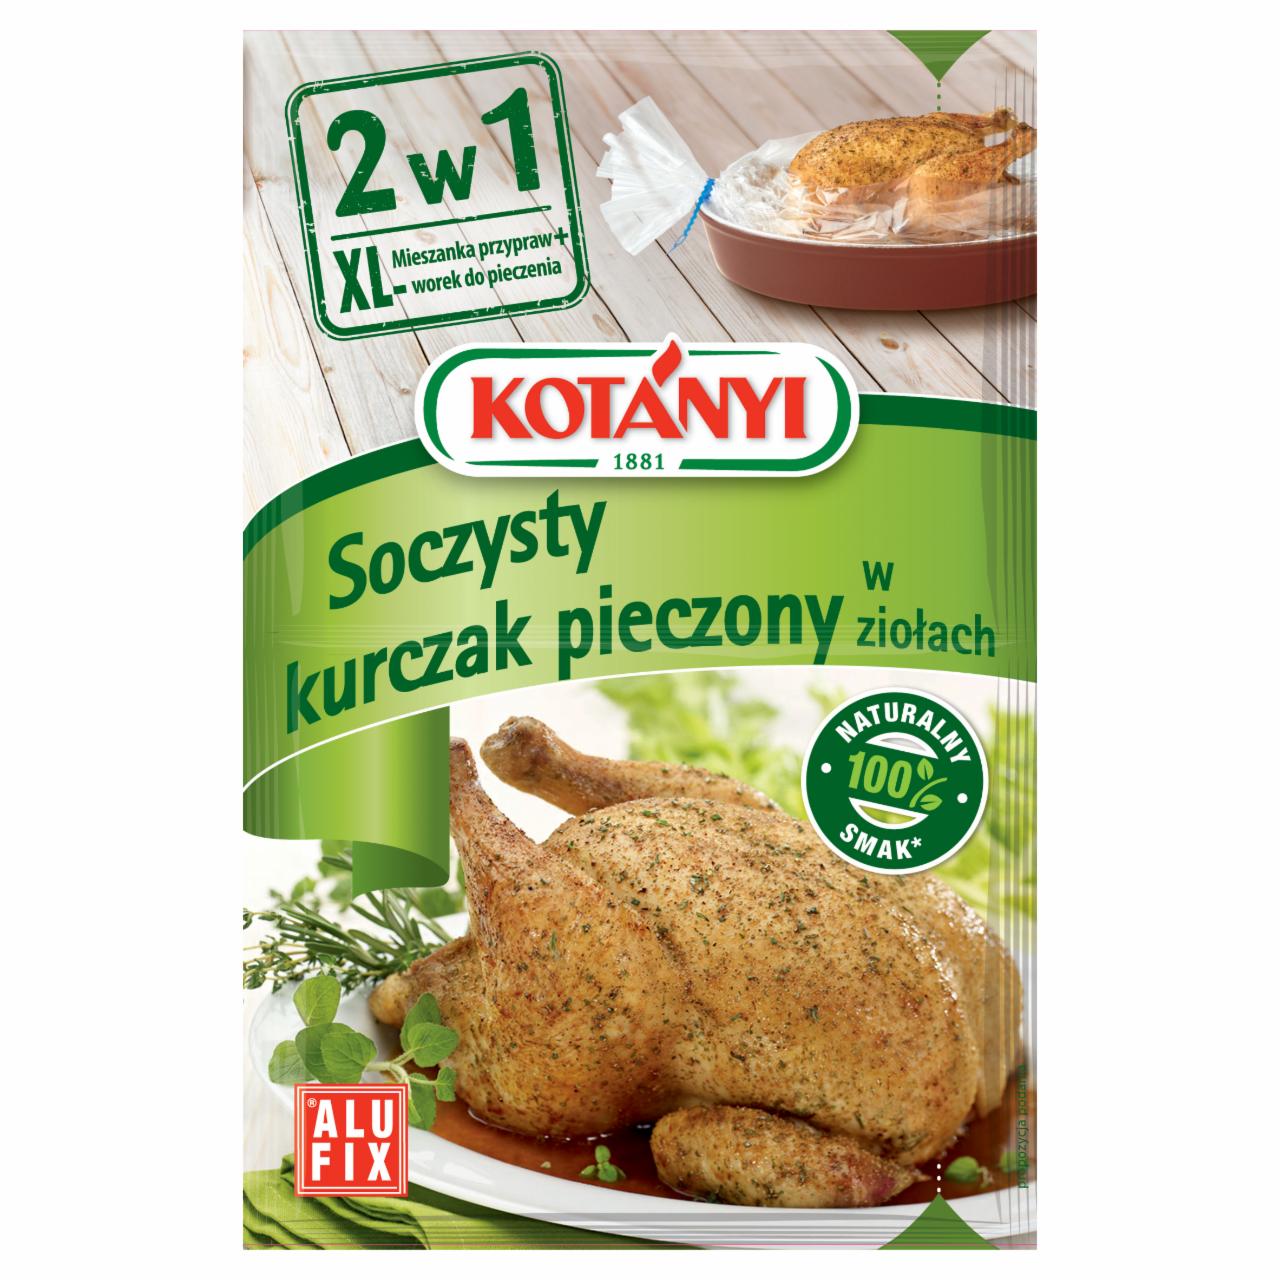 Zdjęcia - Kotányi 2w1 Soczysty kurczak pieczony w ziołach Mieszanka przypraw z workiem do pieczenia 25 g